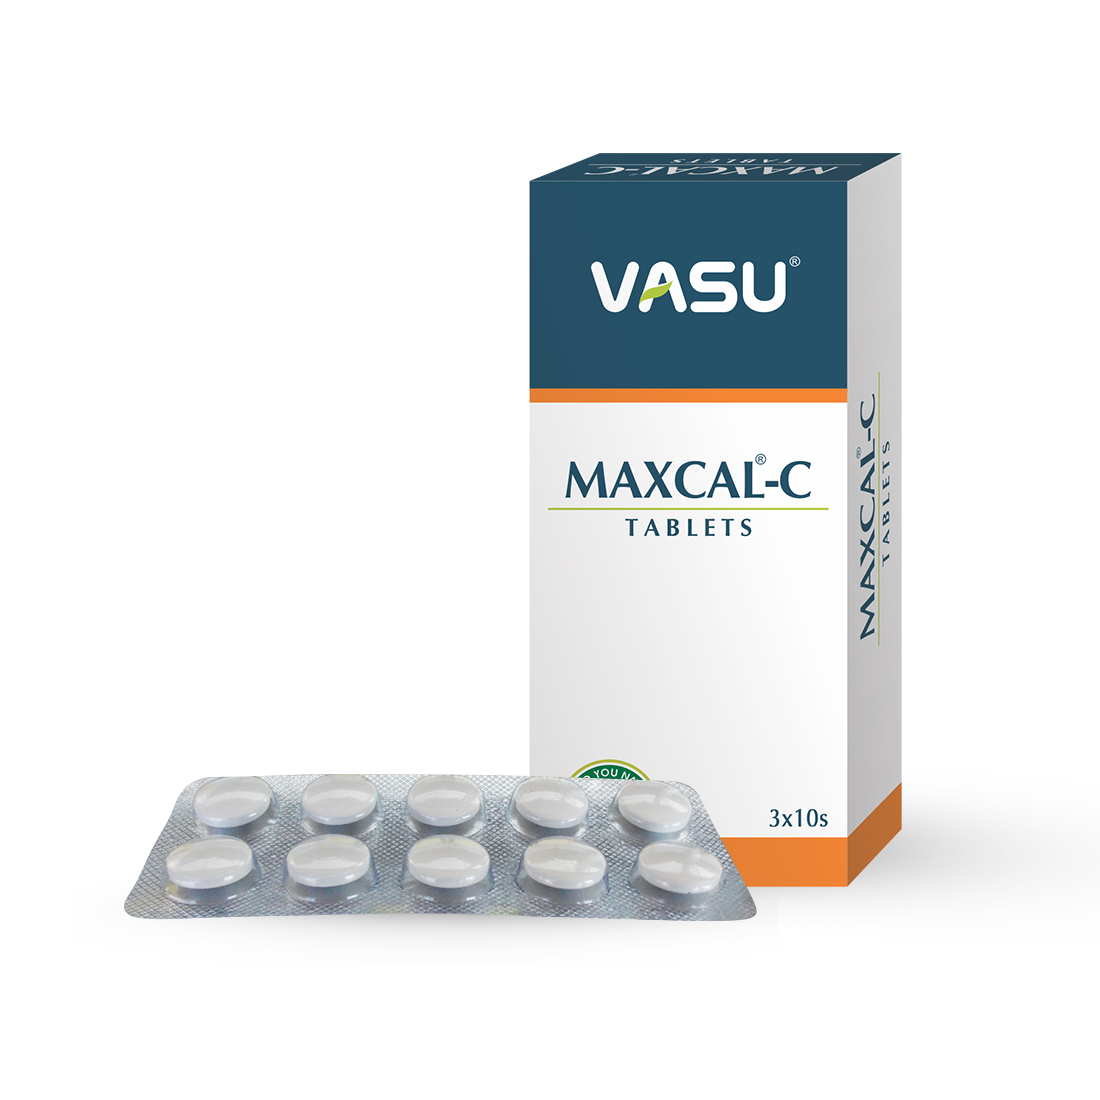 Buy Vasu Maxcal-C Tablet at Best Price Online